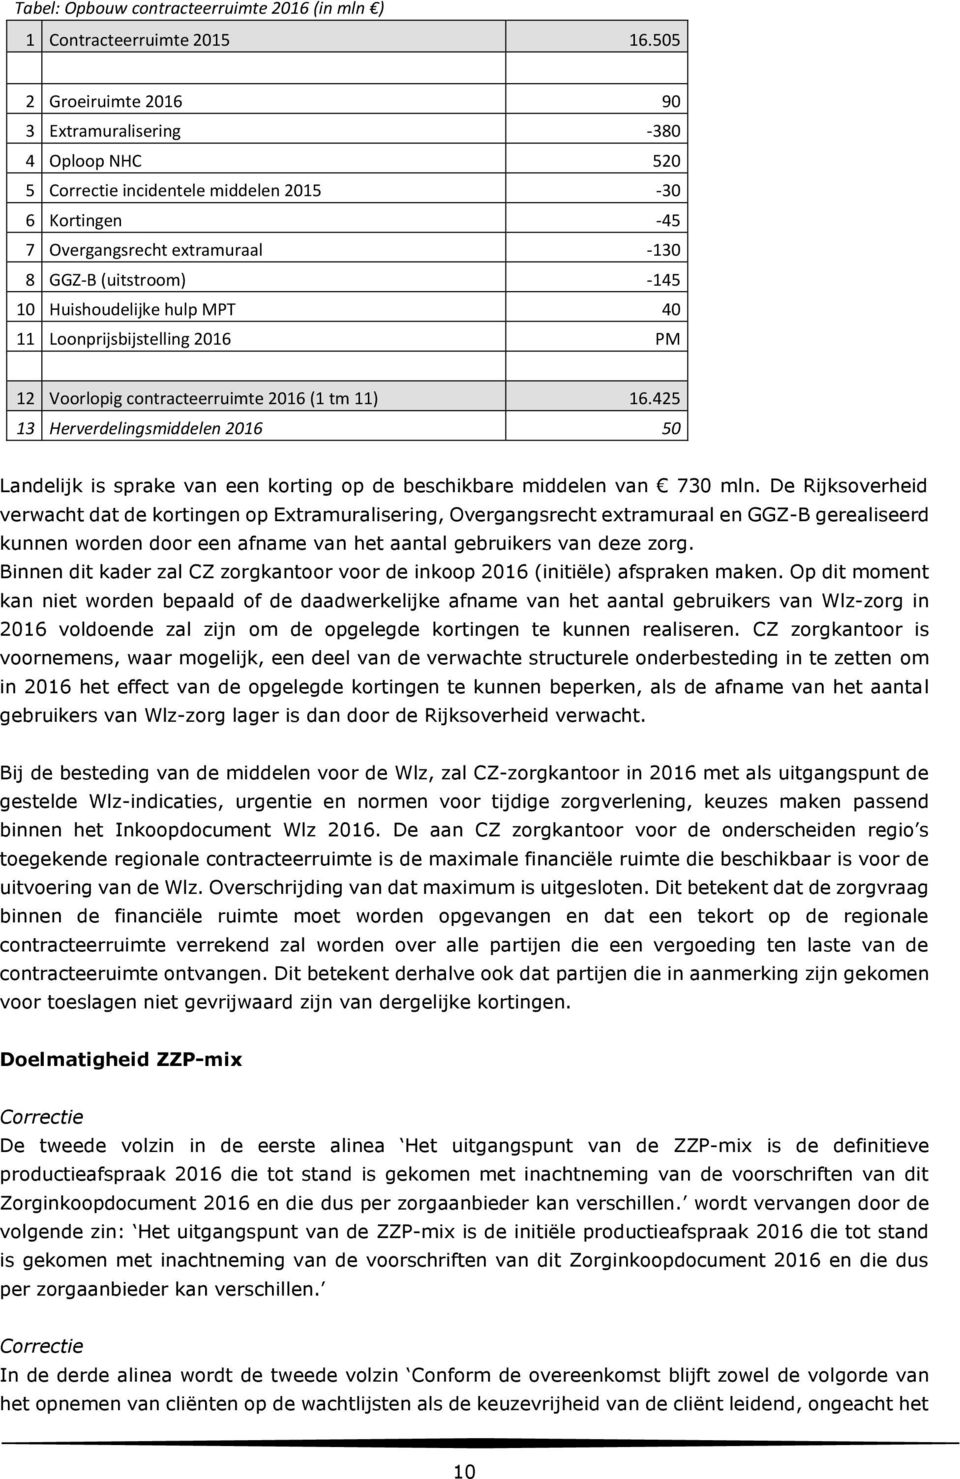 MPT 40 11 Loonprijsbijstelling 2016 PM 12 Voorlopig contracteerruimte 2016 (1 tm 11) 16.425 13 Herverdelingsmiddelen 2016 50 Landelijk is sprake van een korting op de beschikbare middelen van 730 mln.